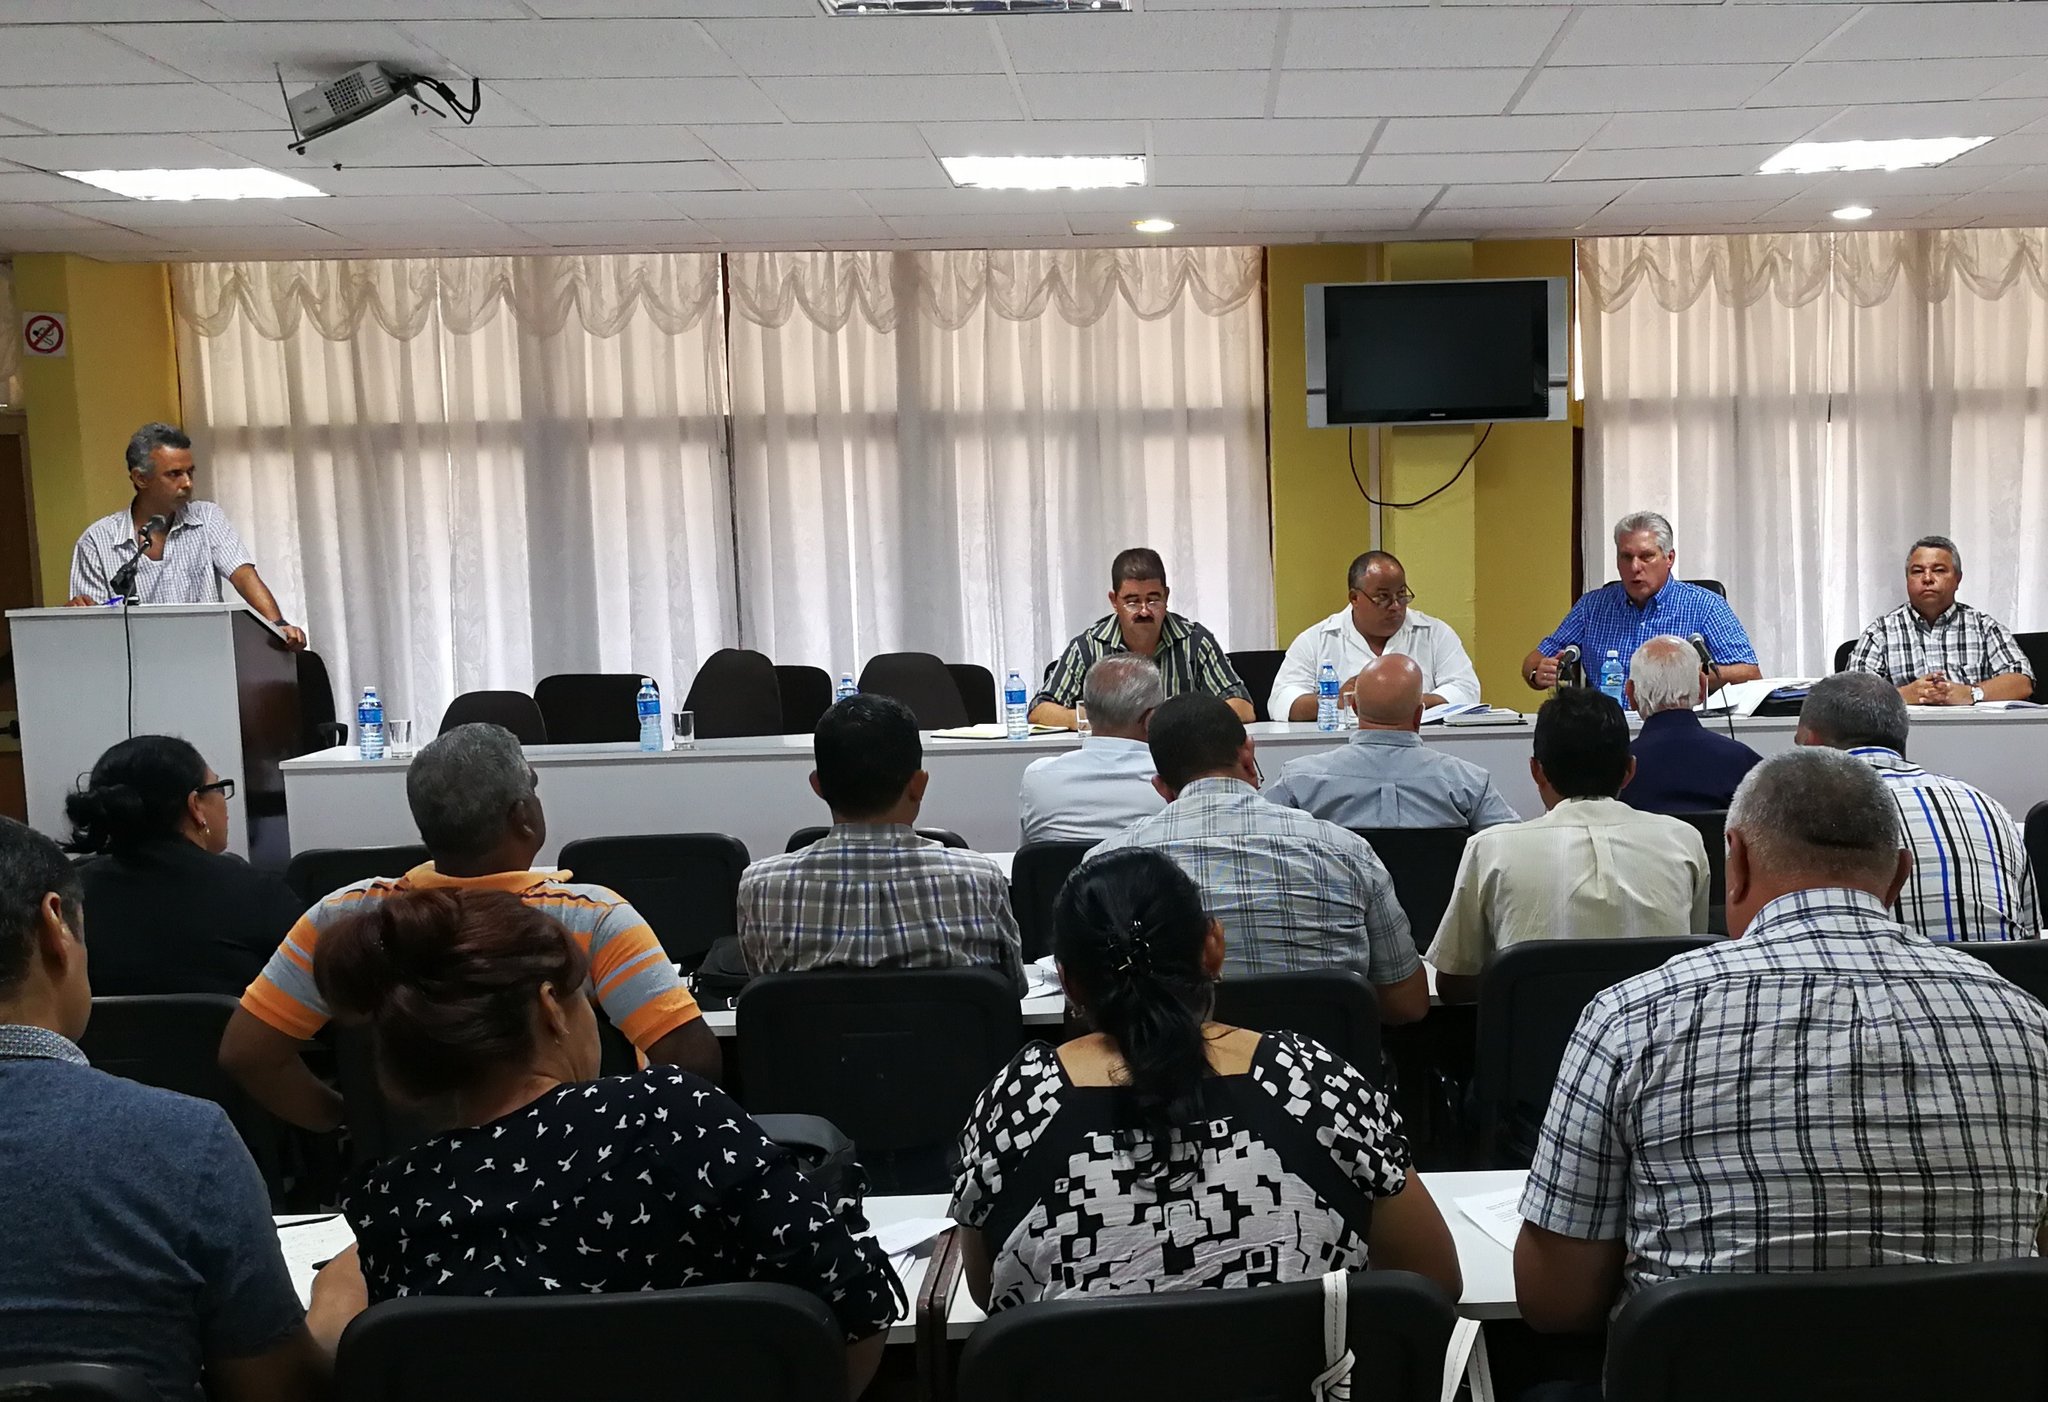 Díaz-Canel prosigue visita gubernamental en Granma